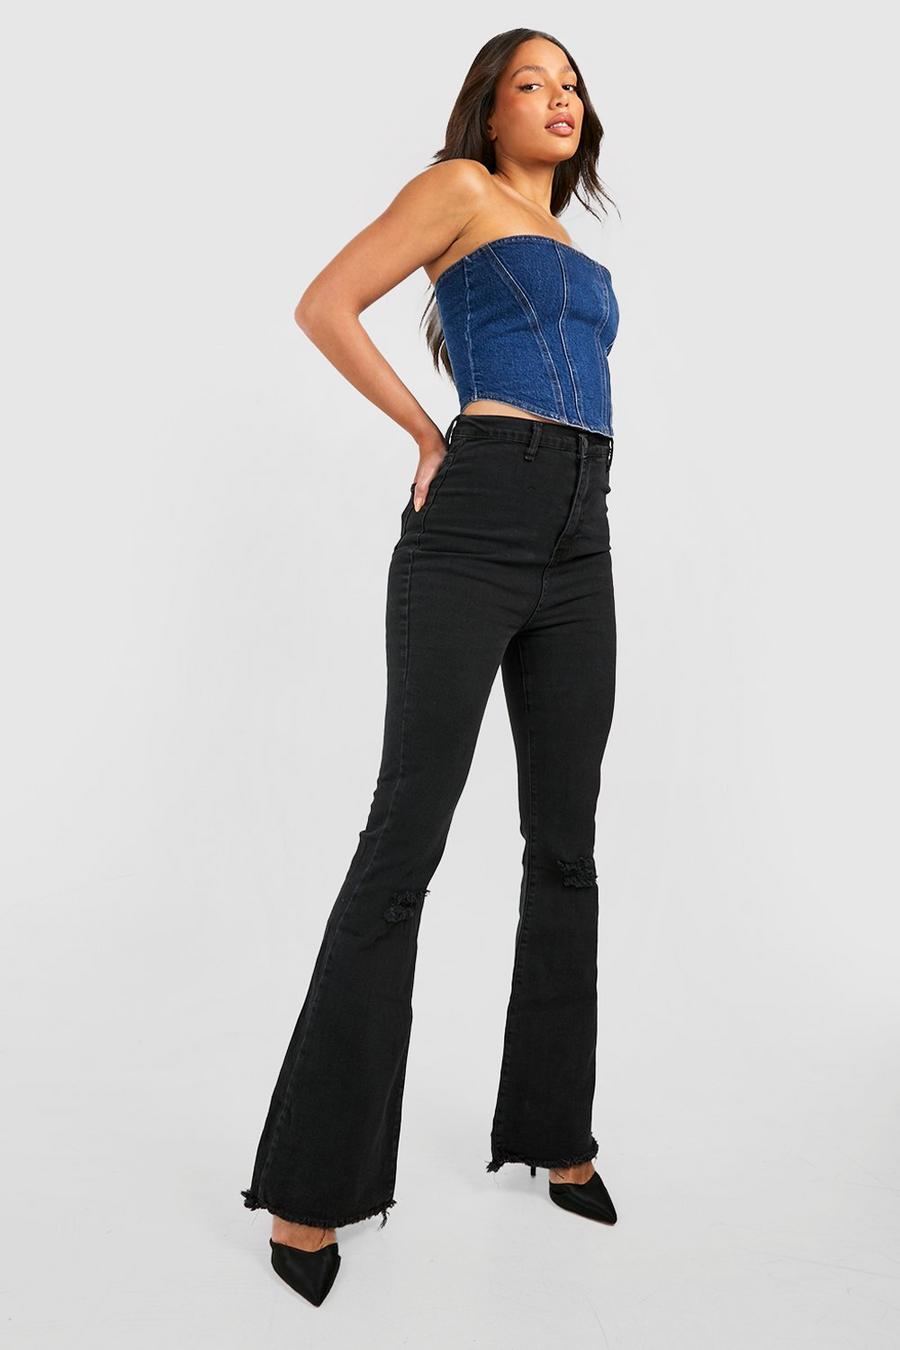 שחור negro מכנסי ג'ינס High Waisted מתרחבים מבד נמתח עם קרעים לנשים גבוהות